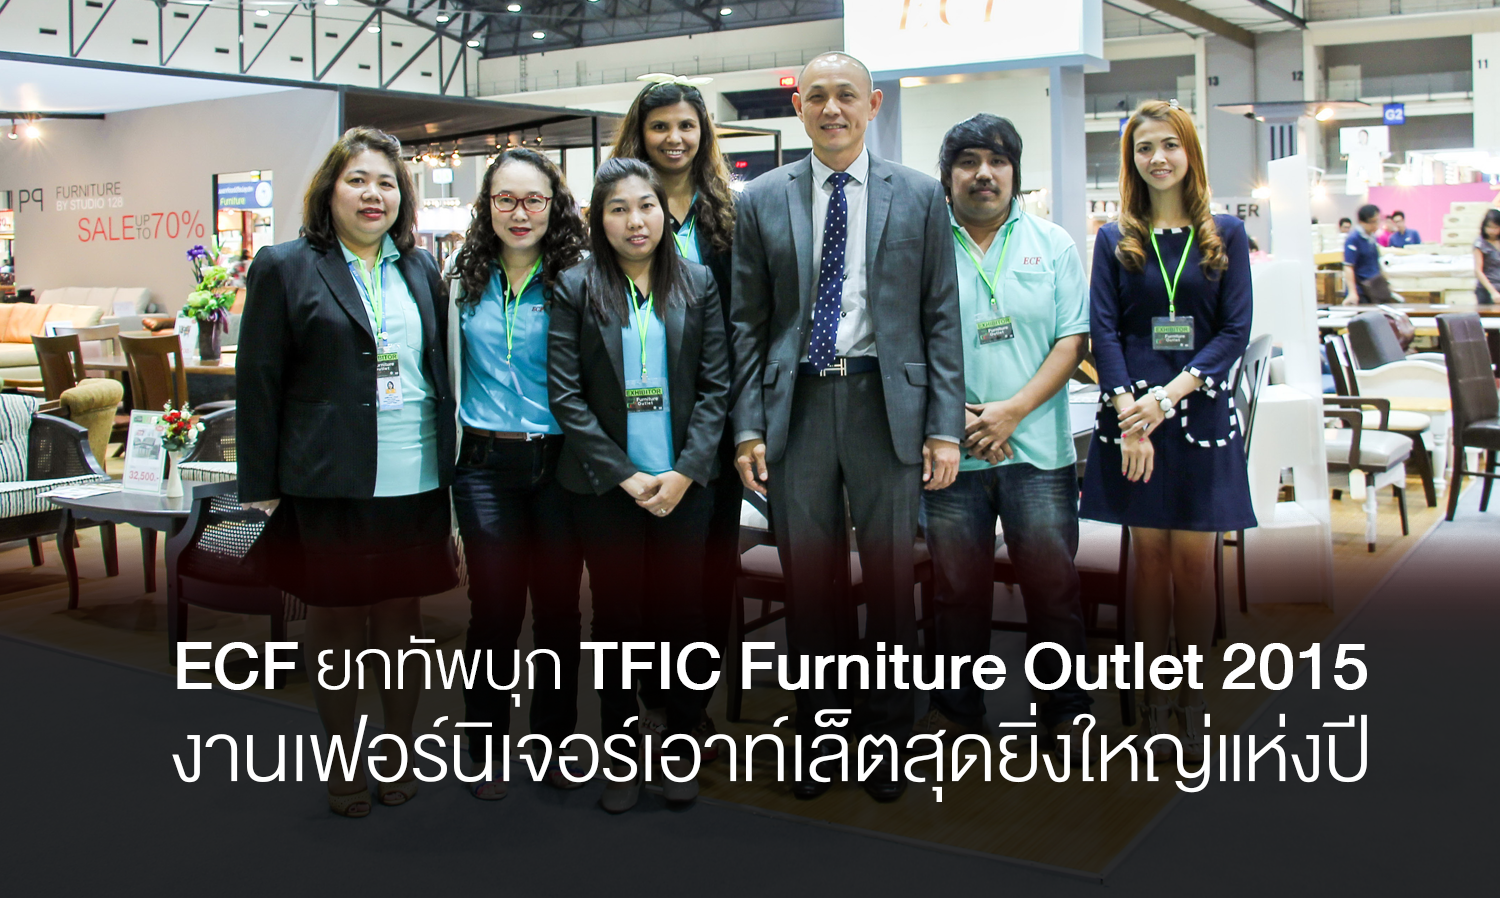 ECF ยกทัพบุก TFIC Furniture Outlet 2015 งานเฟอร์นิเจอร์เอาท์เล็ตสุดยิ่งใหญ่แห่งปี